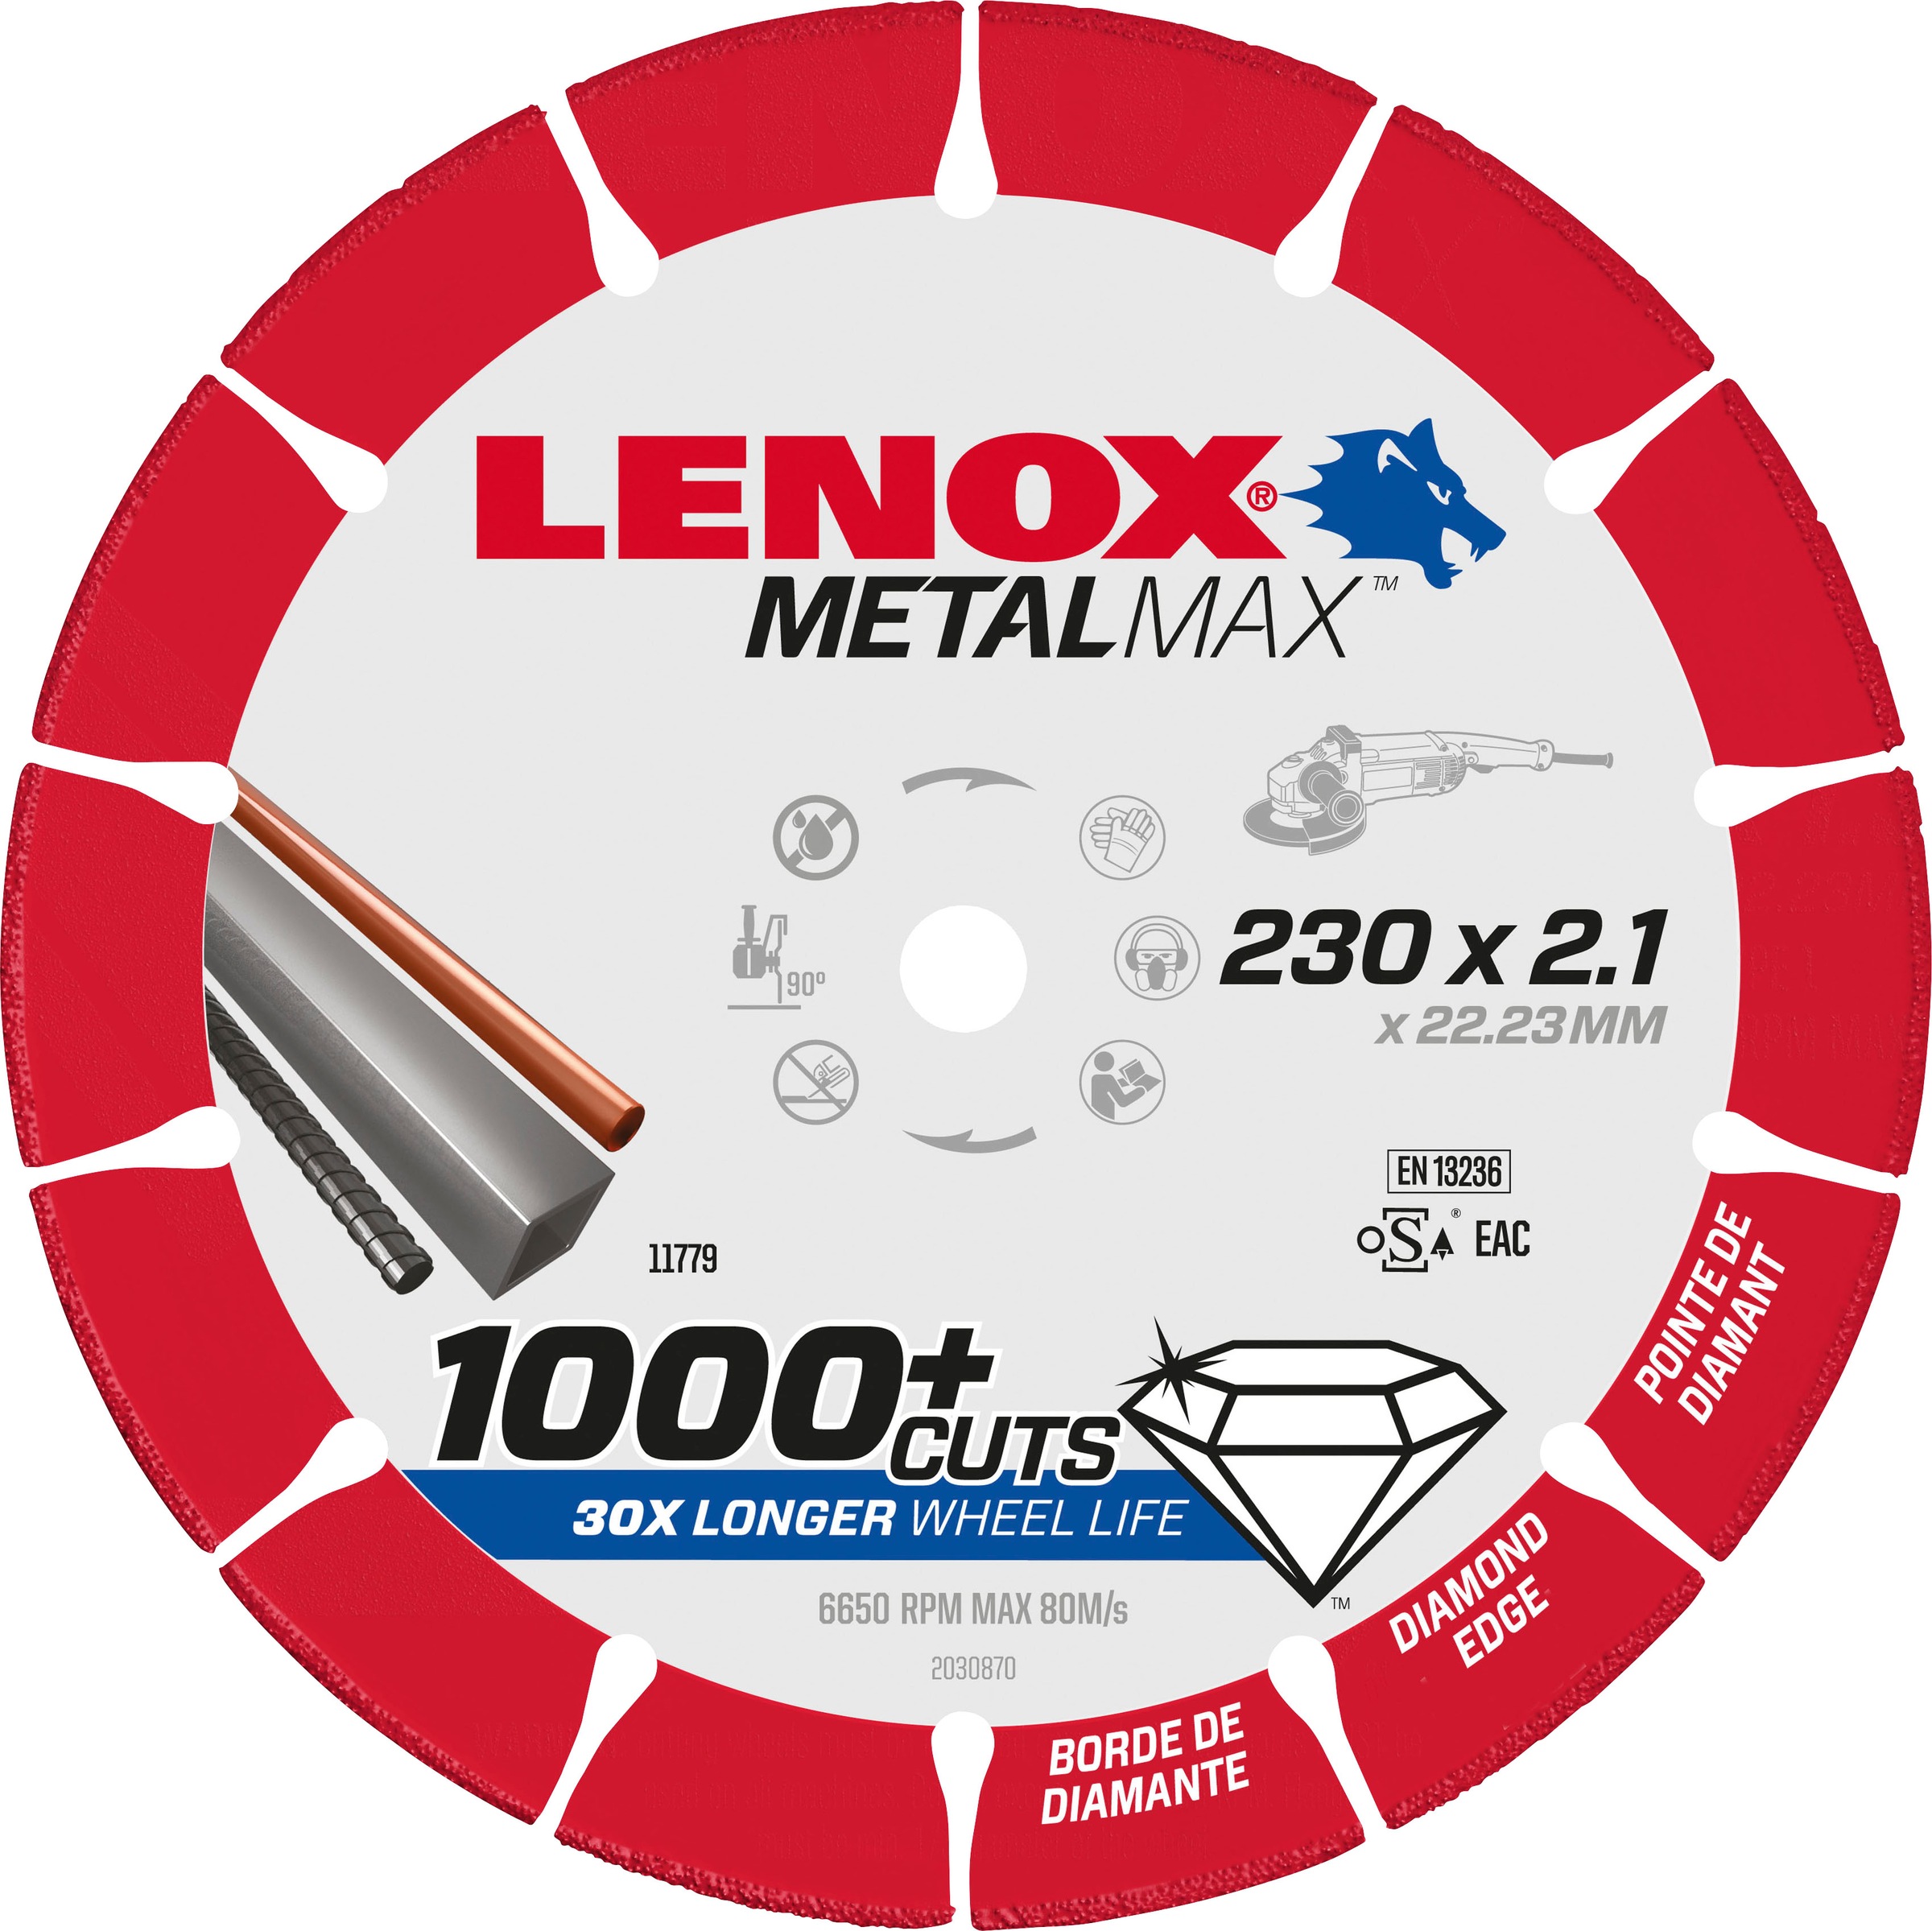 Lenox Diamanttrennscheibe "2030870"